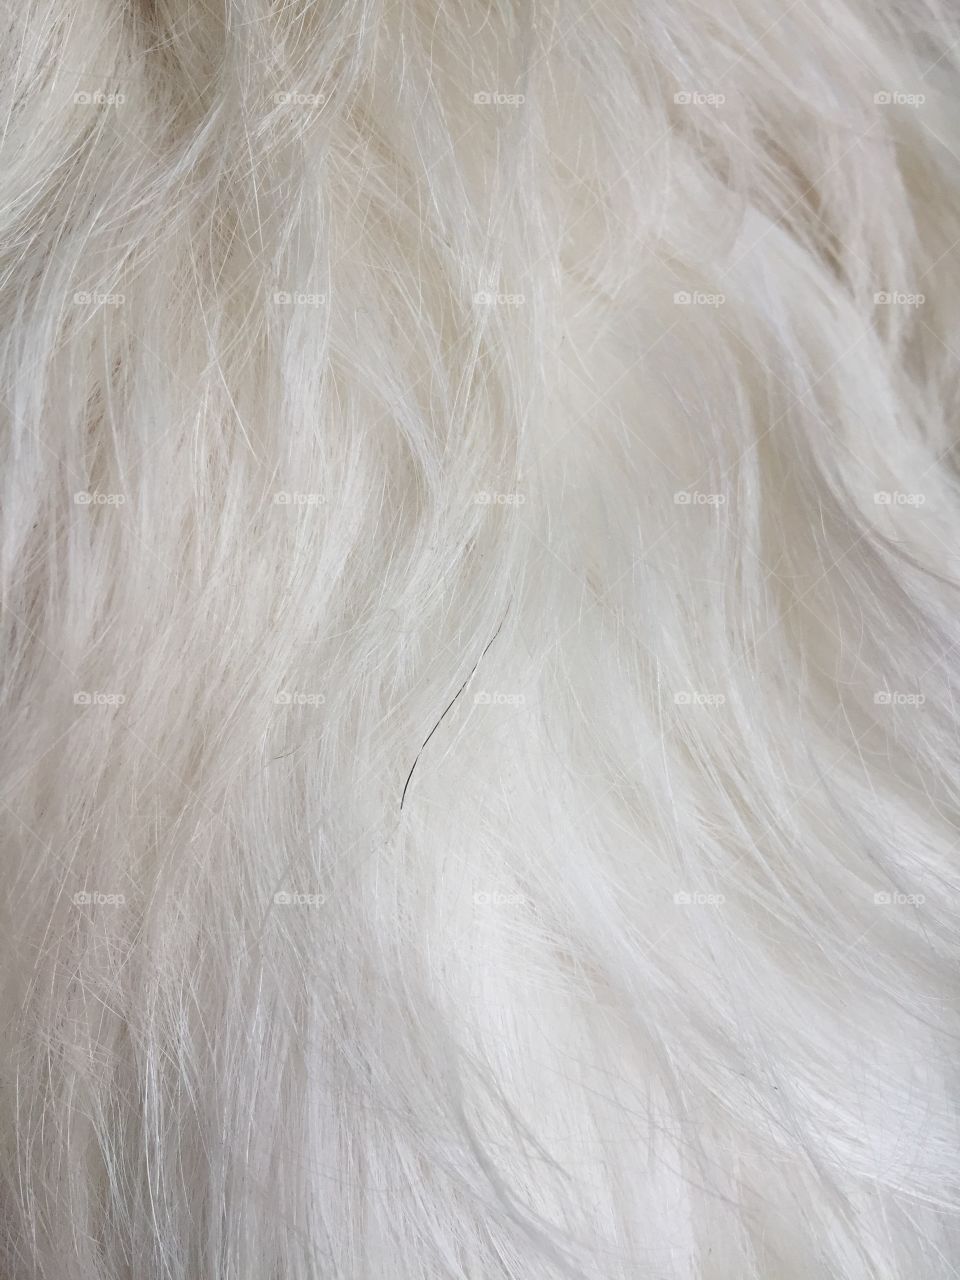 Black hair on white coated dog